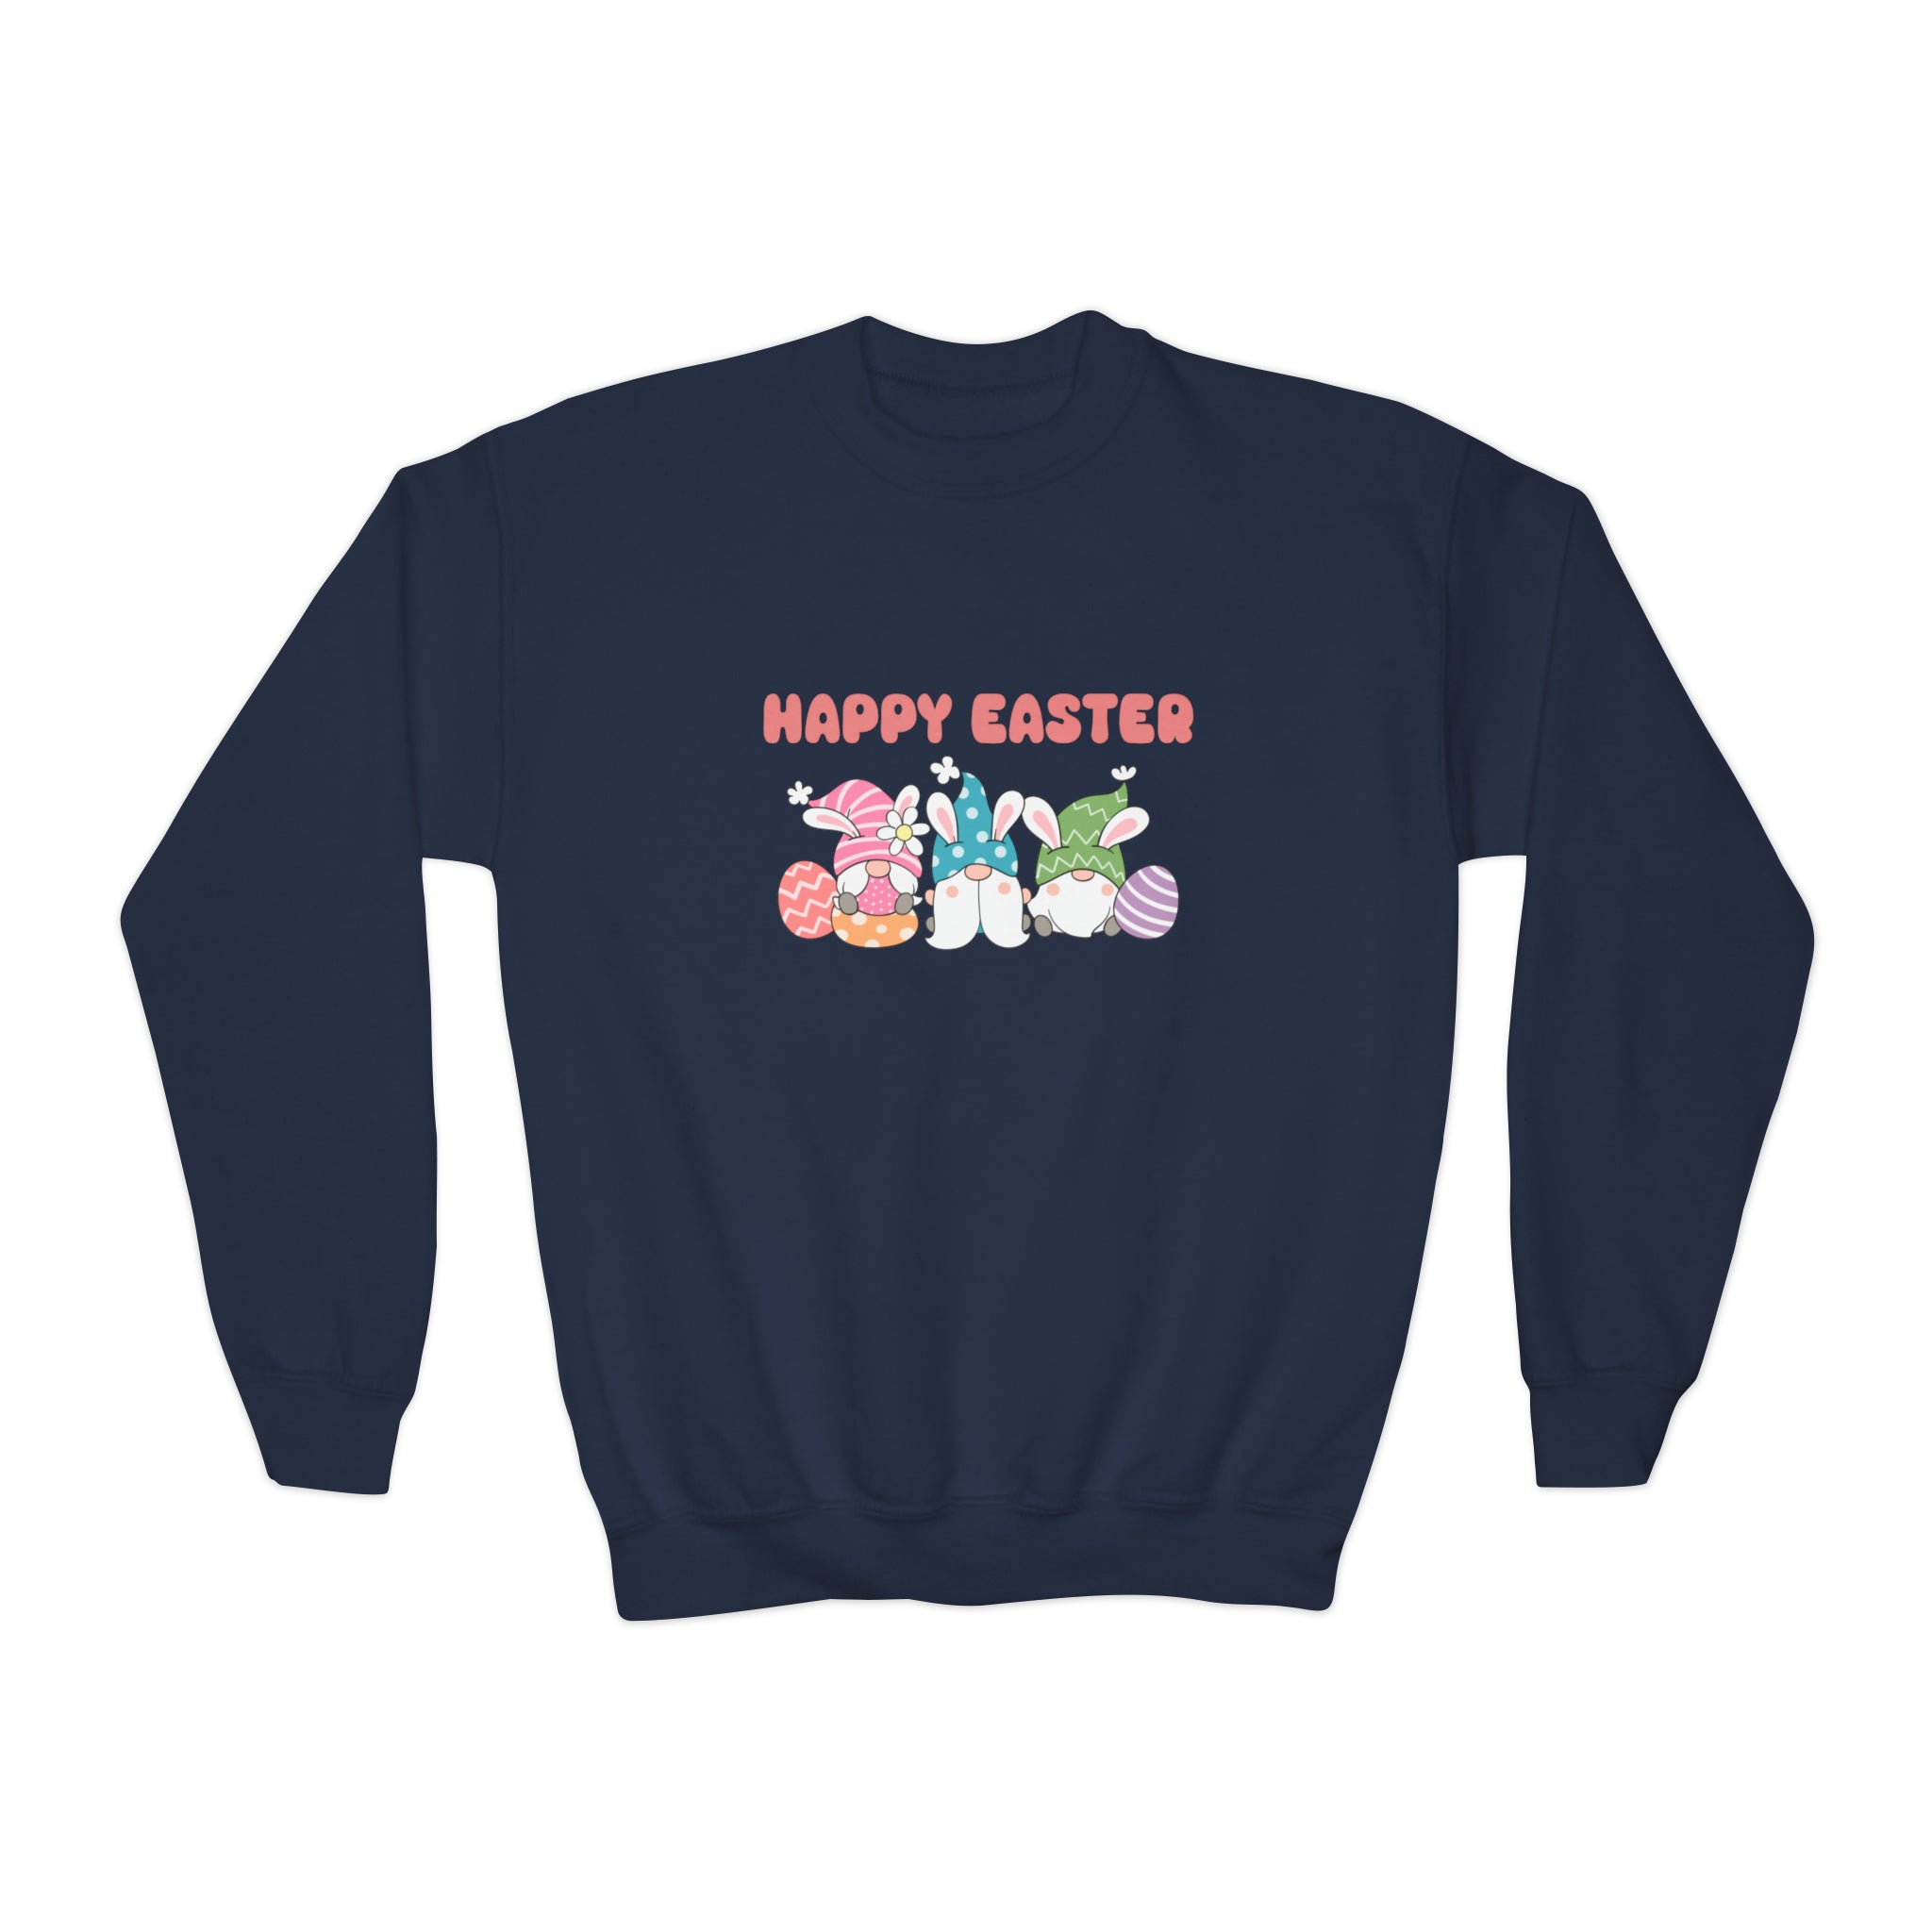 Easter Sweatshirt For Girl Tween Girl